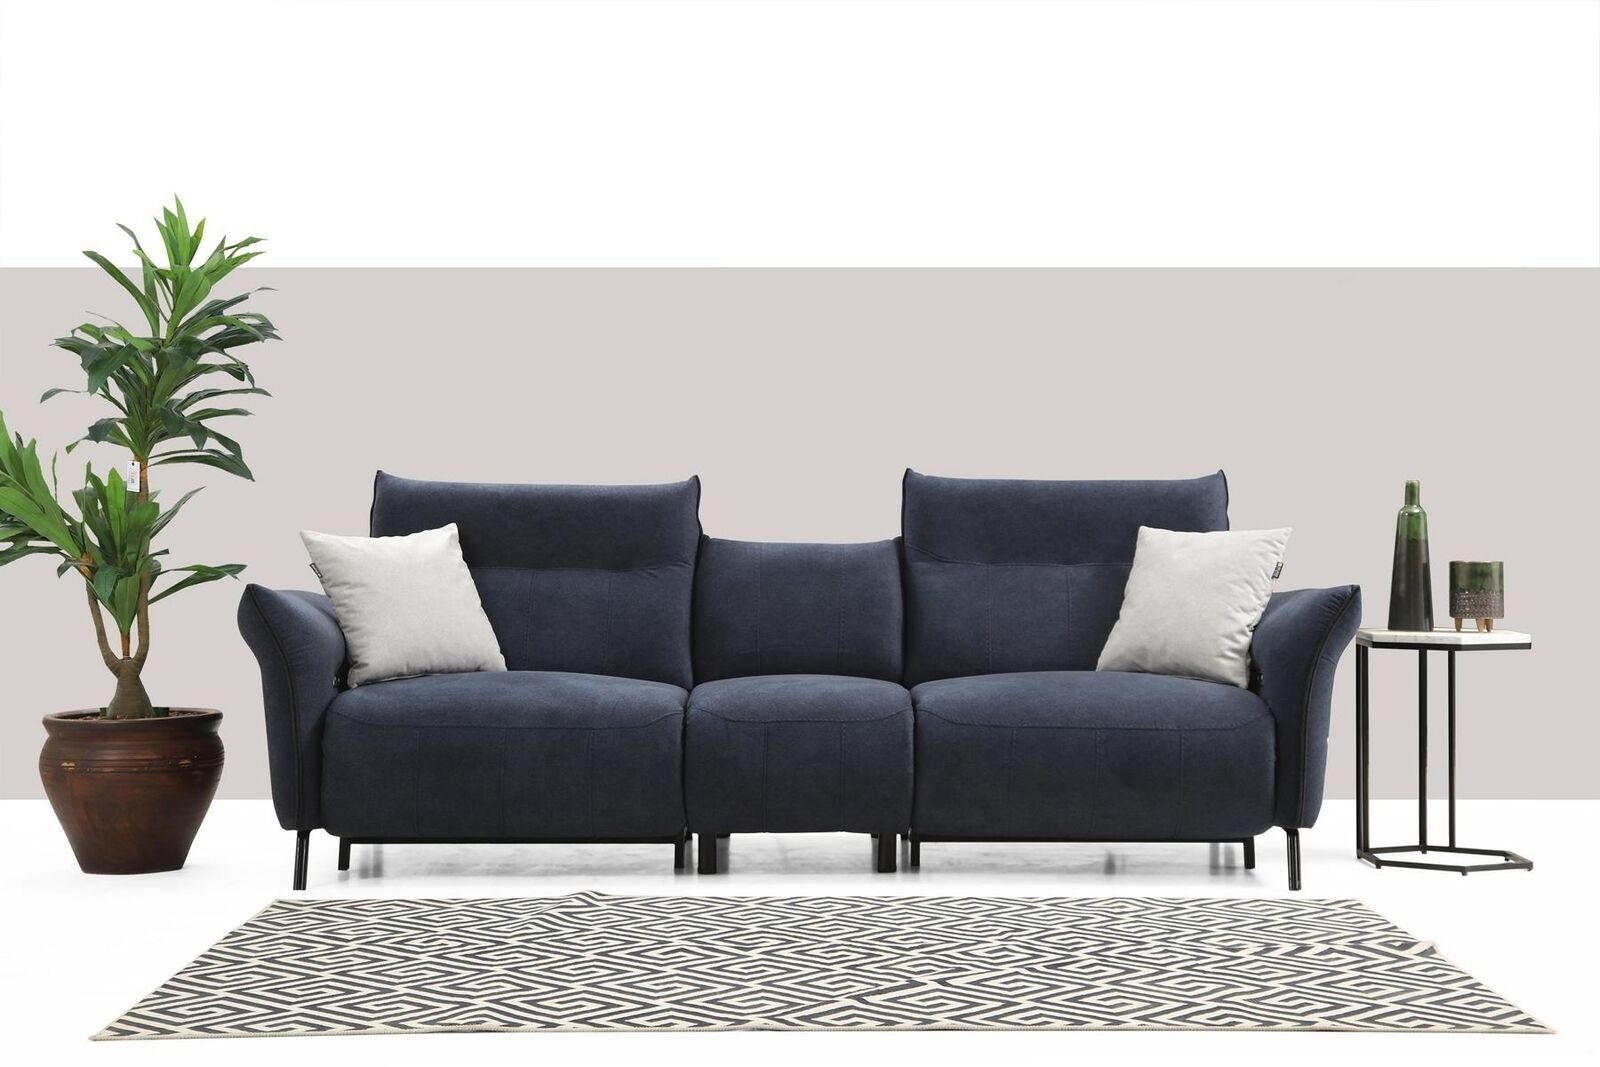 JVmoebel 4-Sitzer Designer Sofa Couch Polstersofa Sitzer Modern Wohnzimmer Luxus, 1 Teile, Made in Europa